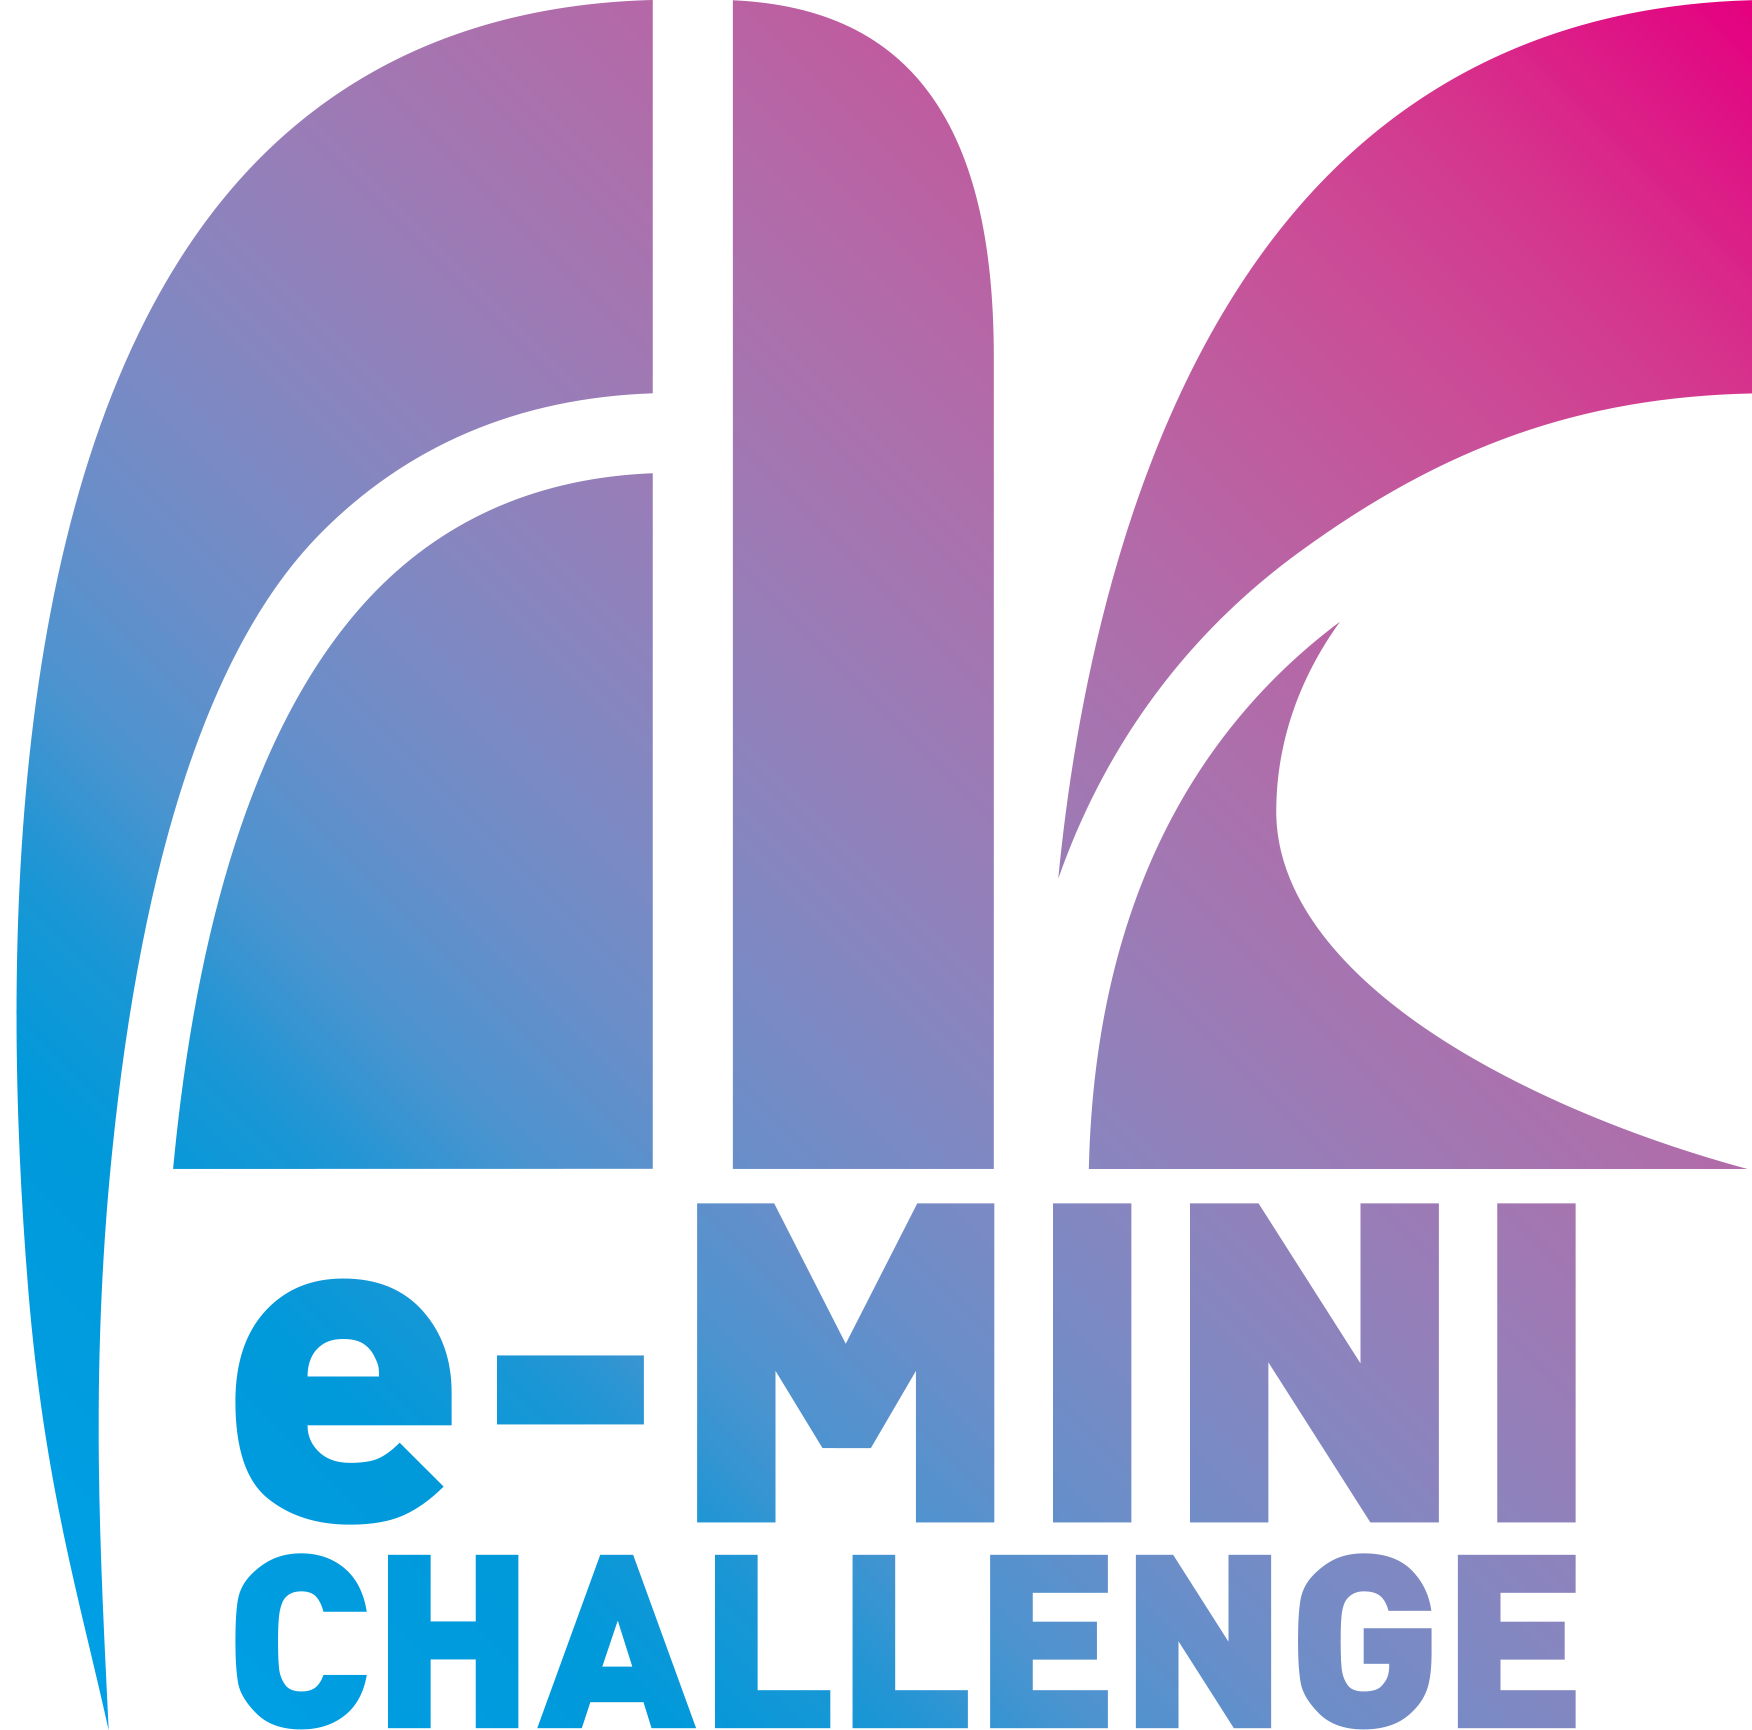 e-MINI CHALLENGE® 2021 S2 スペシャルステージ開催決定！